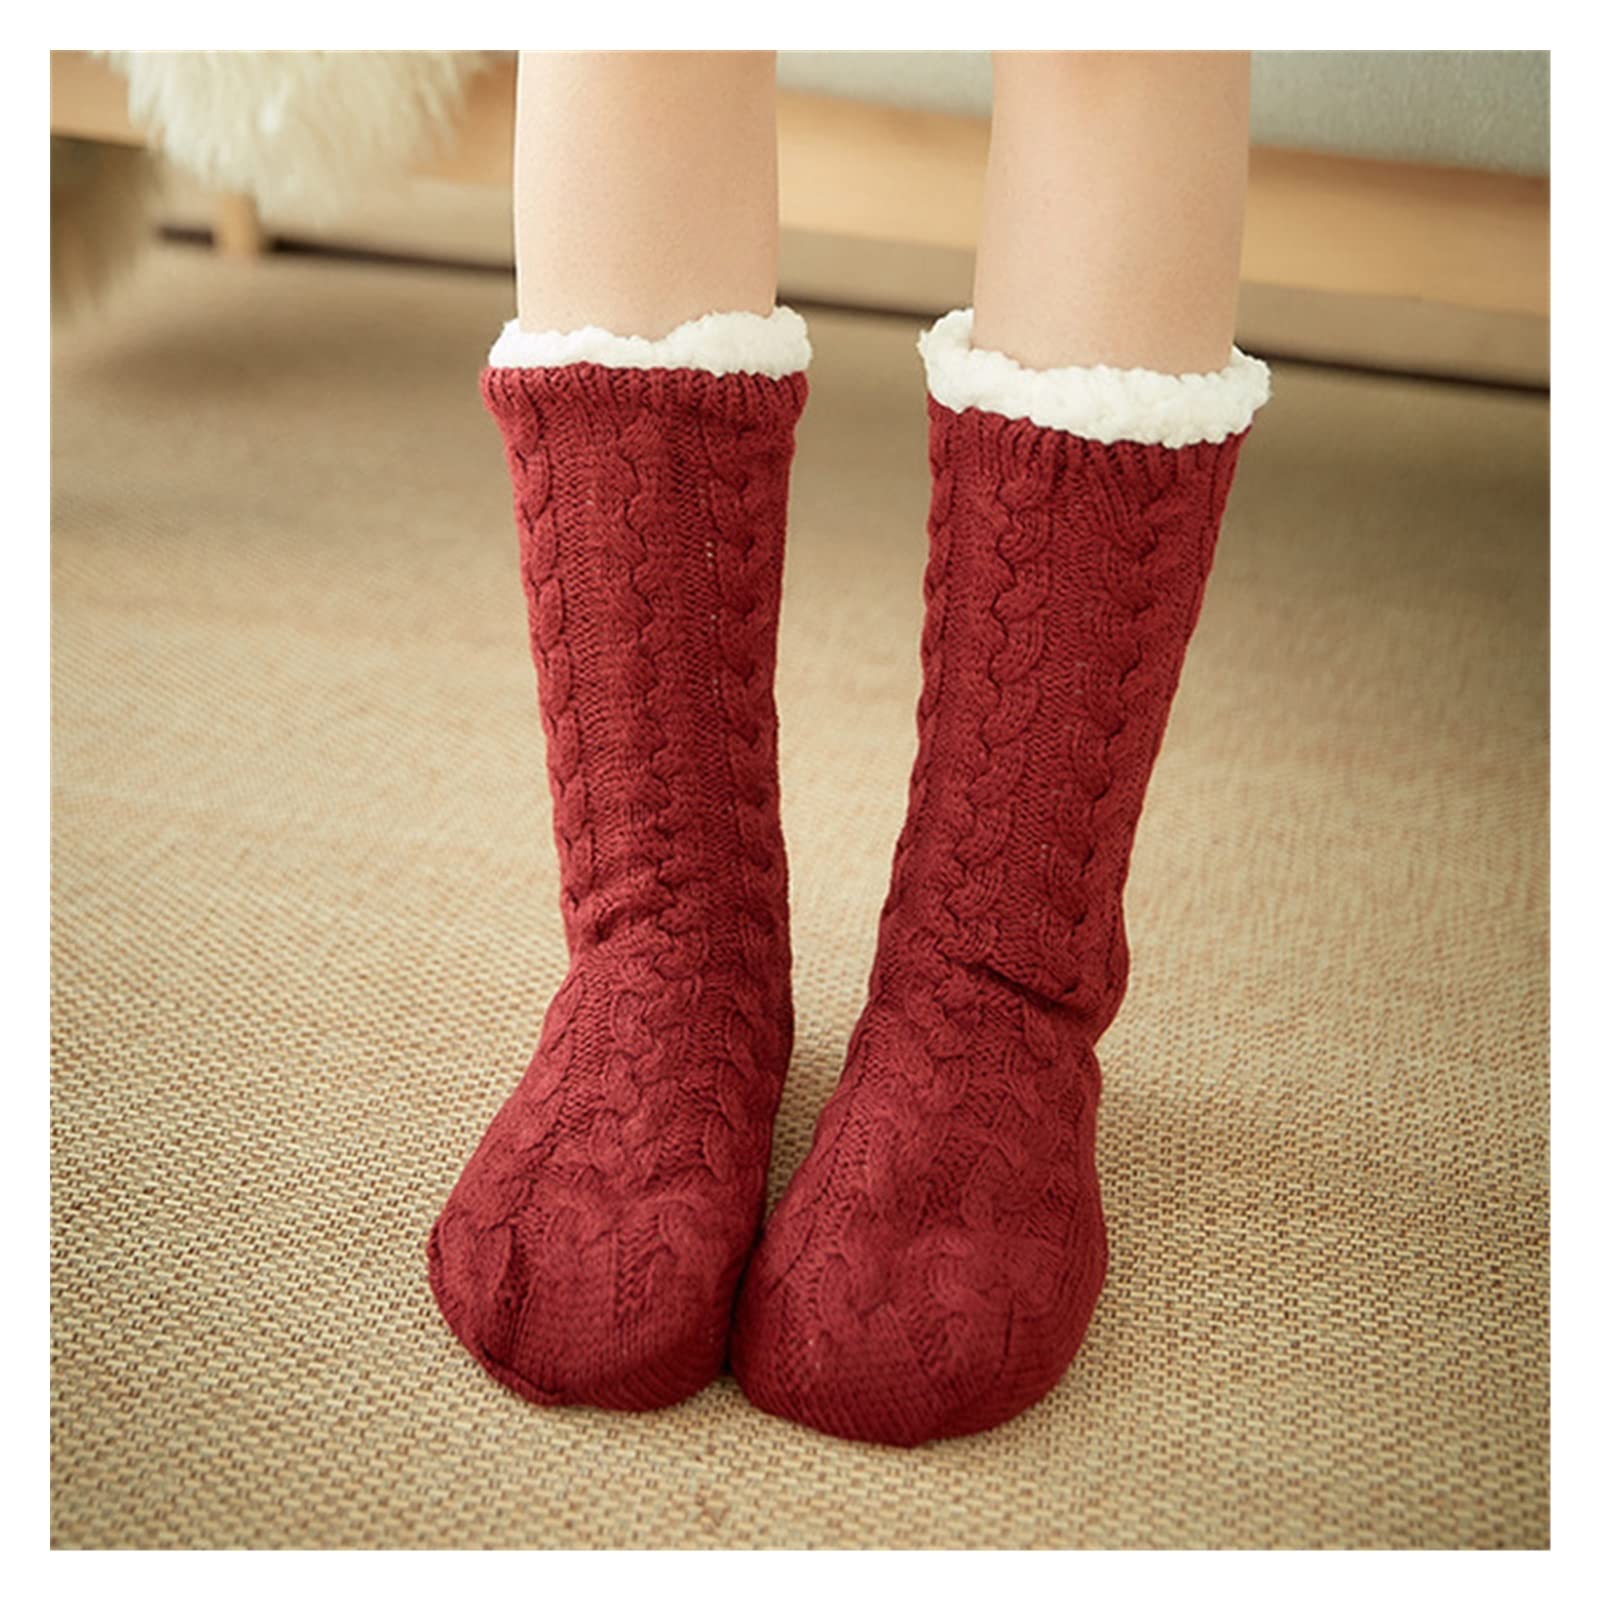 House-stay Slipper Winter Thermal Socks